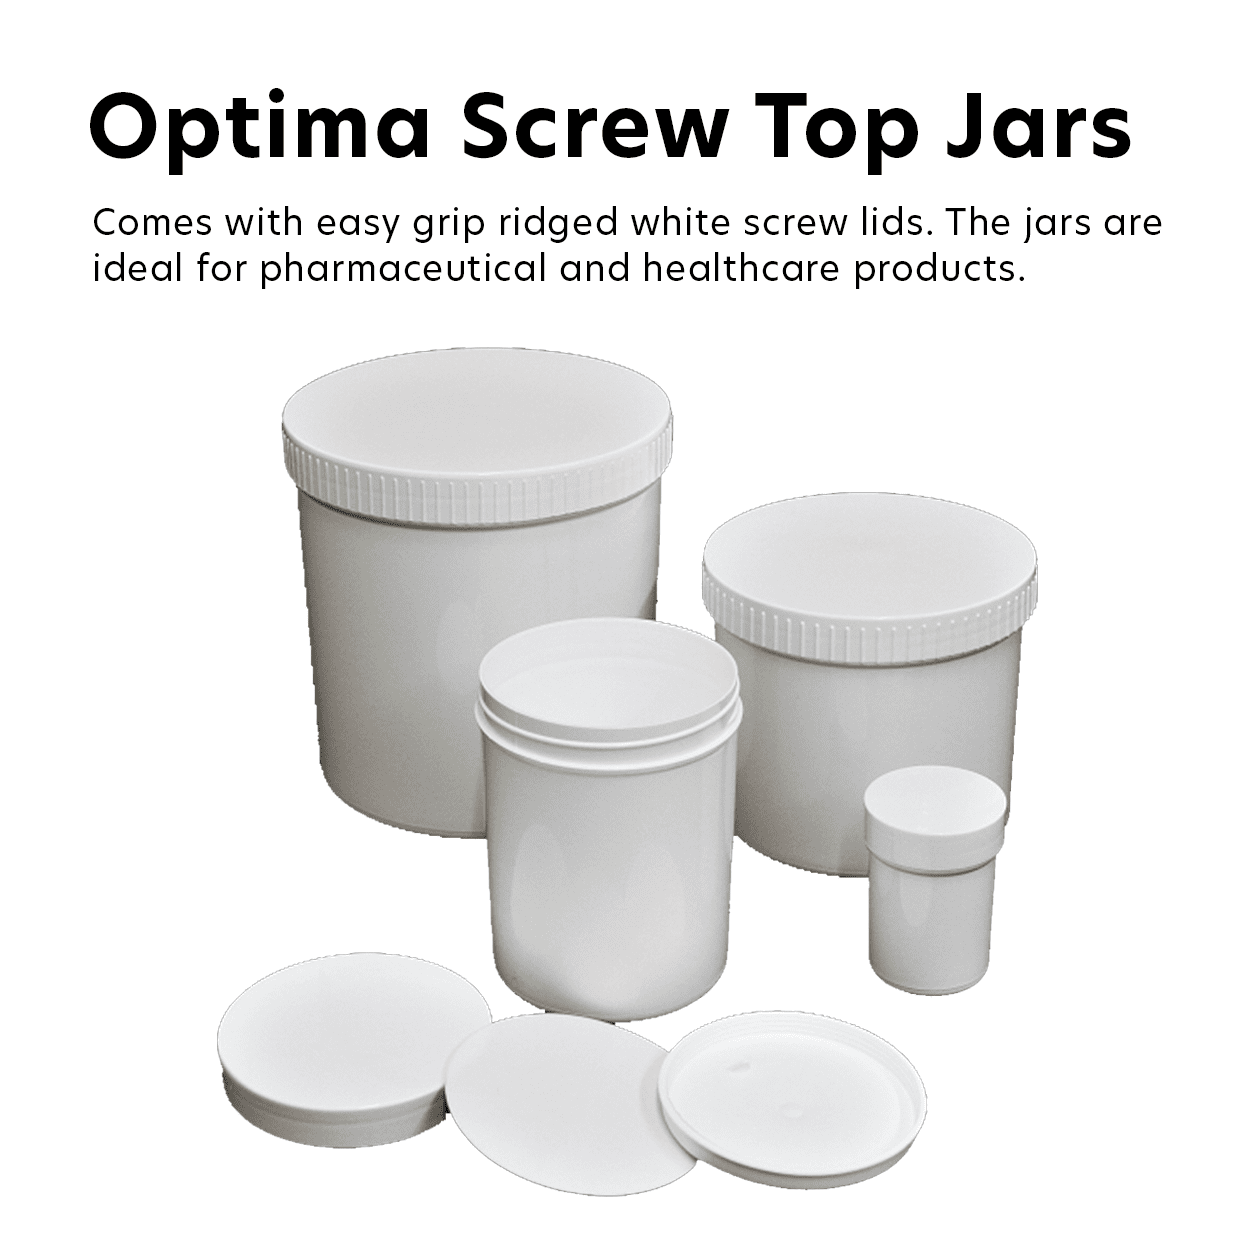 Optima Screw Top Jars